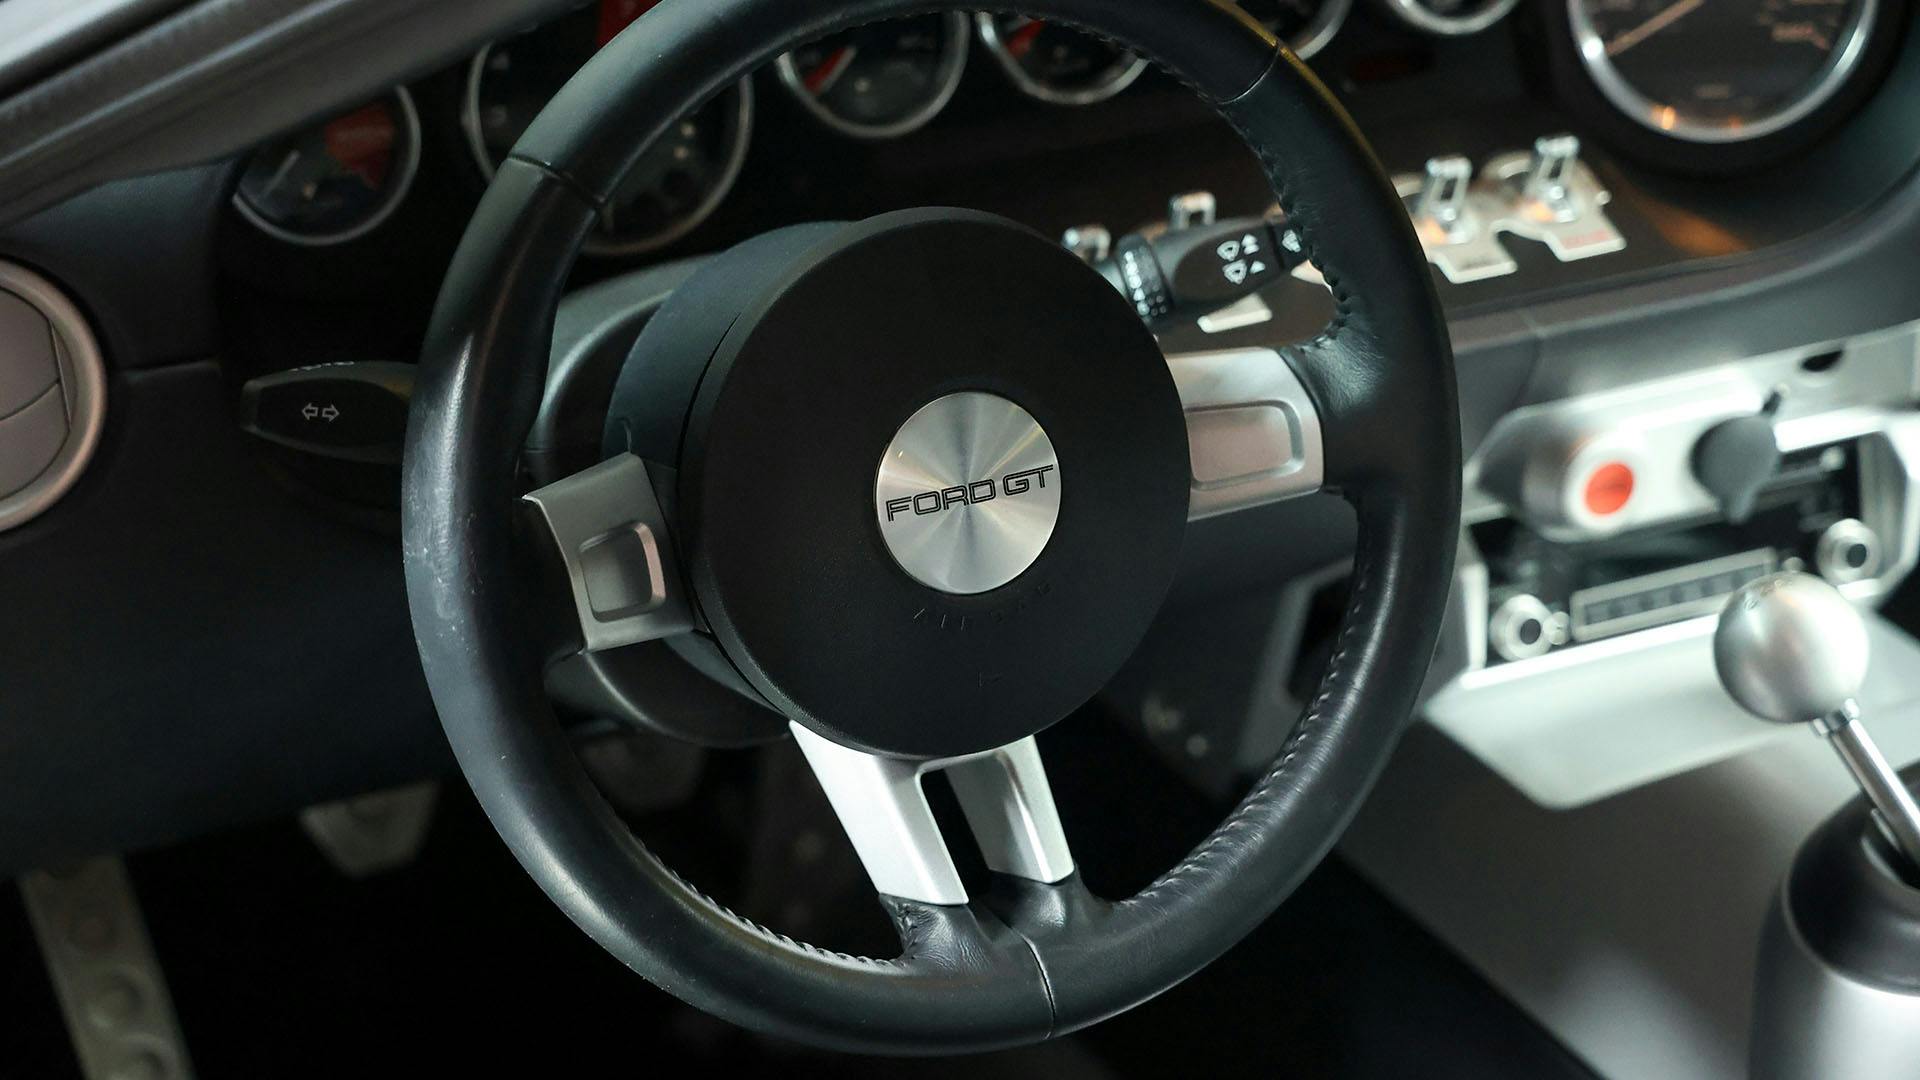 2005 Ford GT steering wheel